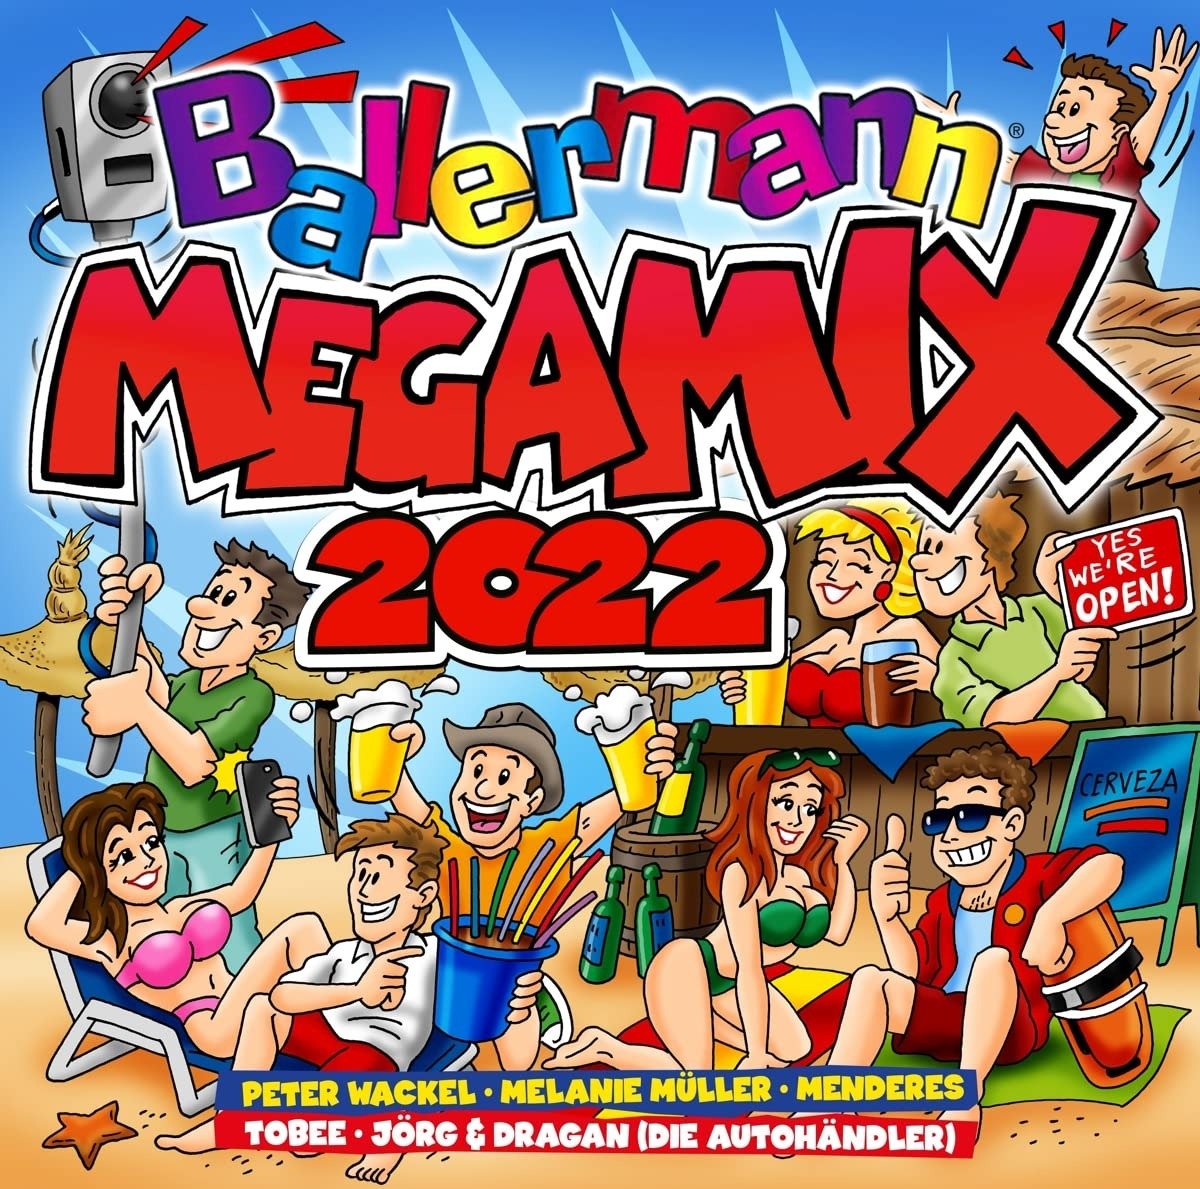 CD Shop - V/A BALLERMANN MEGAMIX 2022